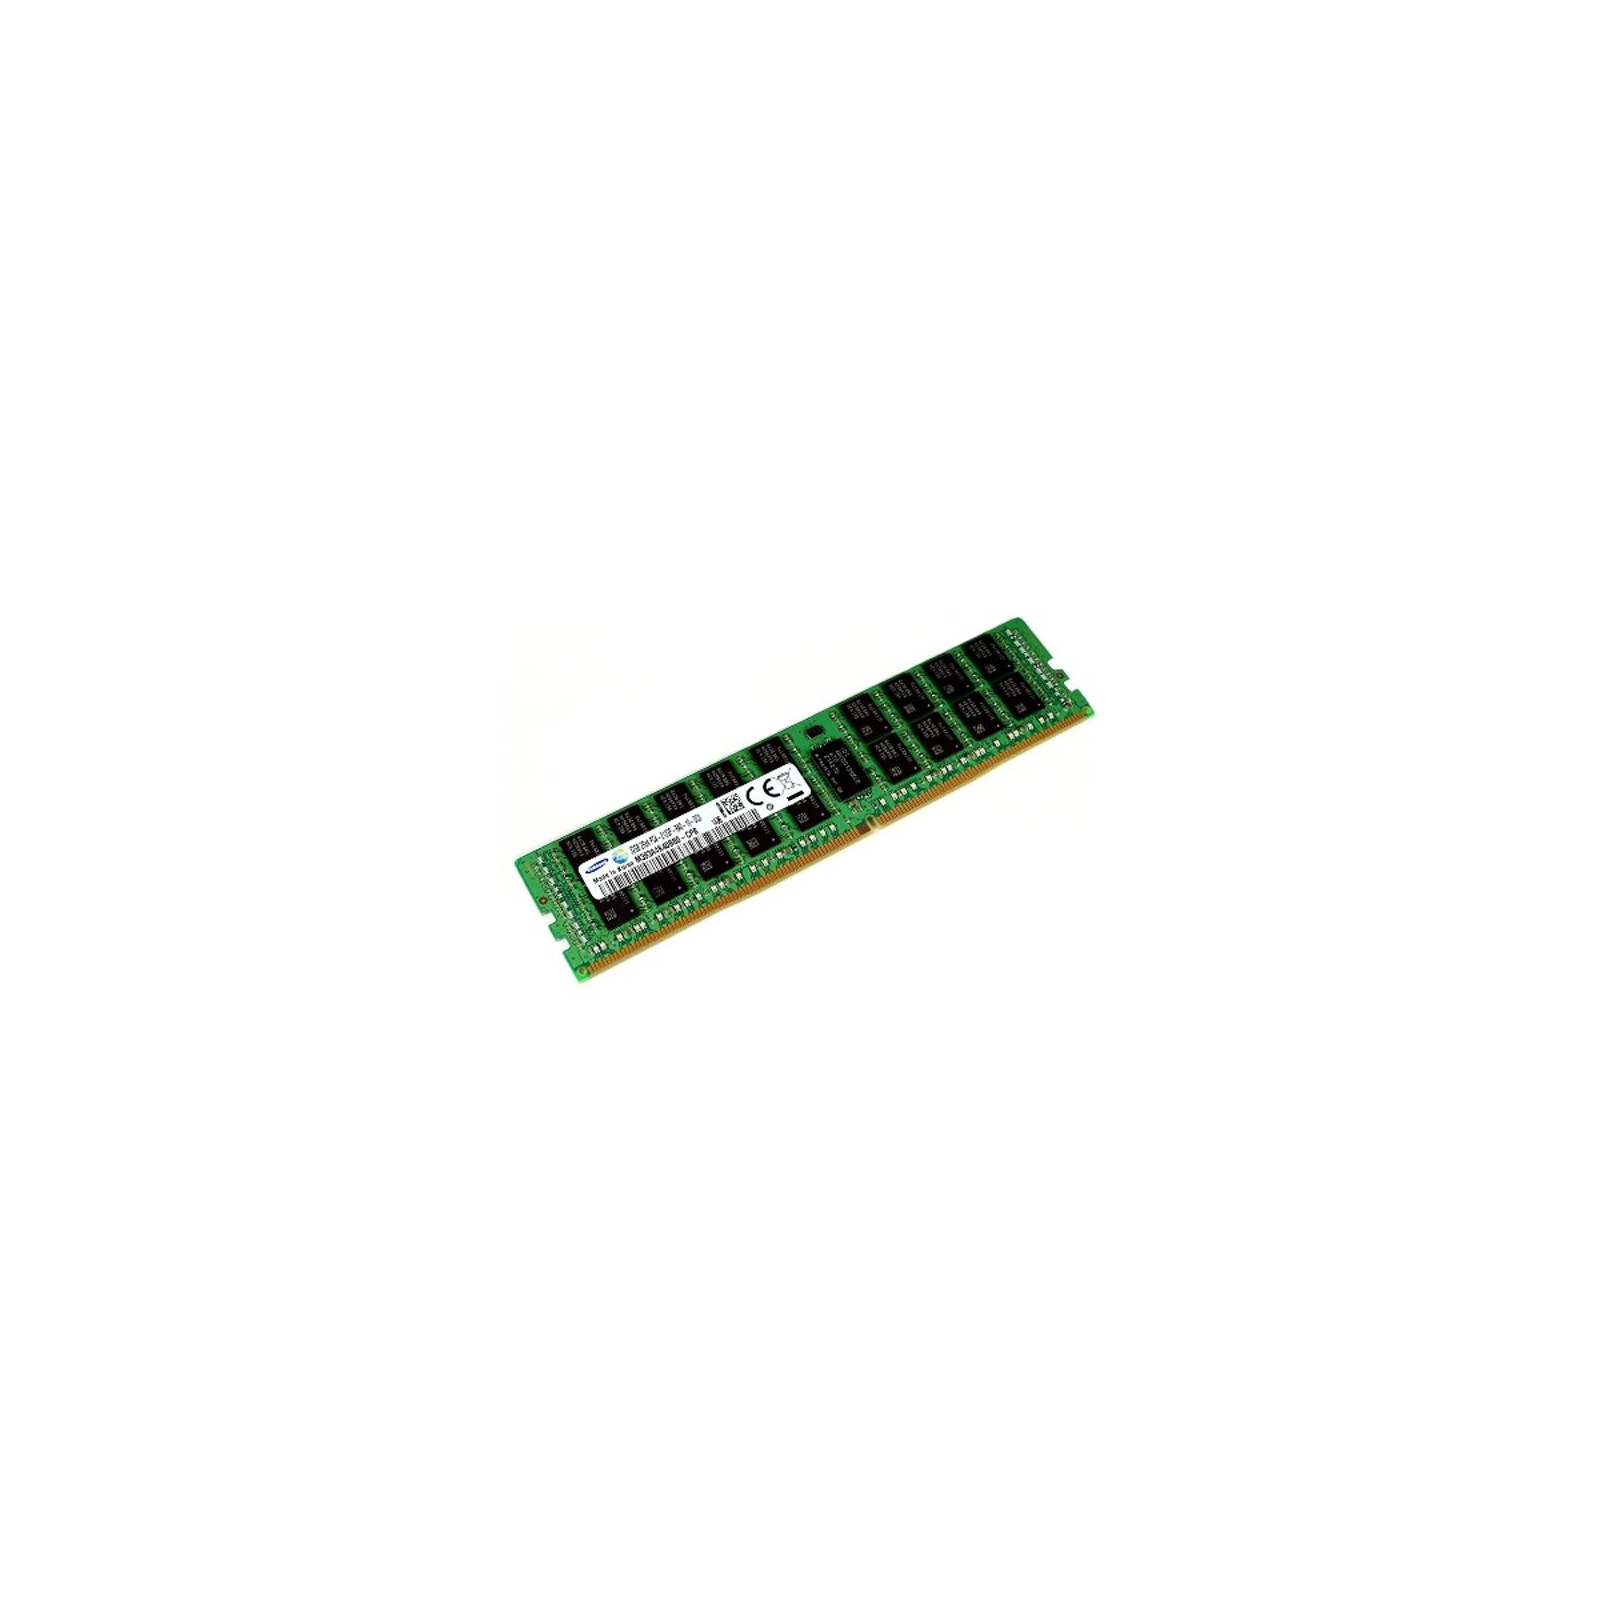 Модуль памяти для сервера DDR4 32GB ECC RDIMM 2666MHz 2Rx4 1.2V CL19 Samsung (M393A4K40CB2-CTD)